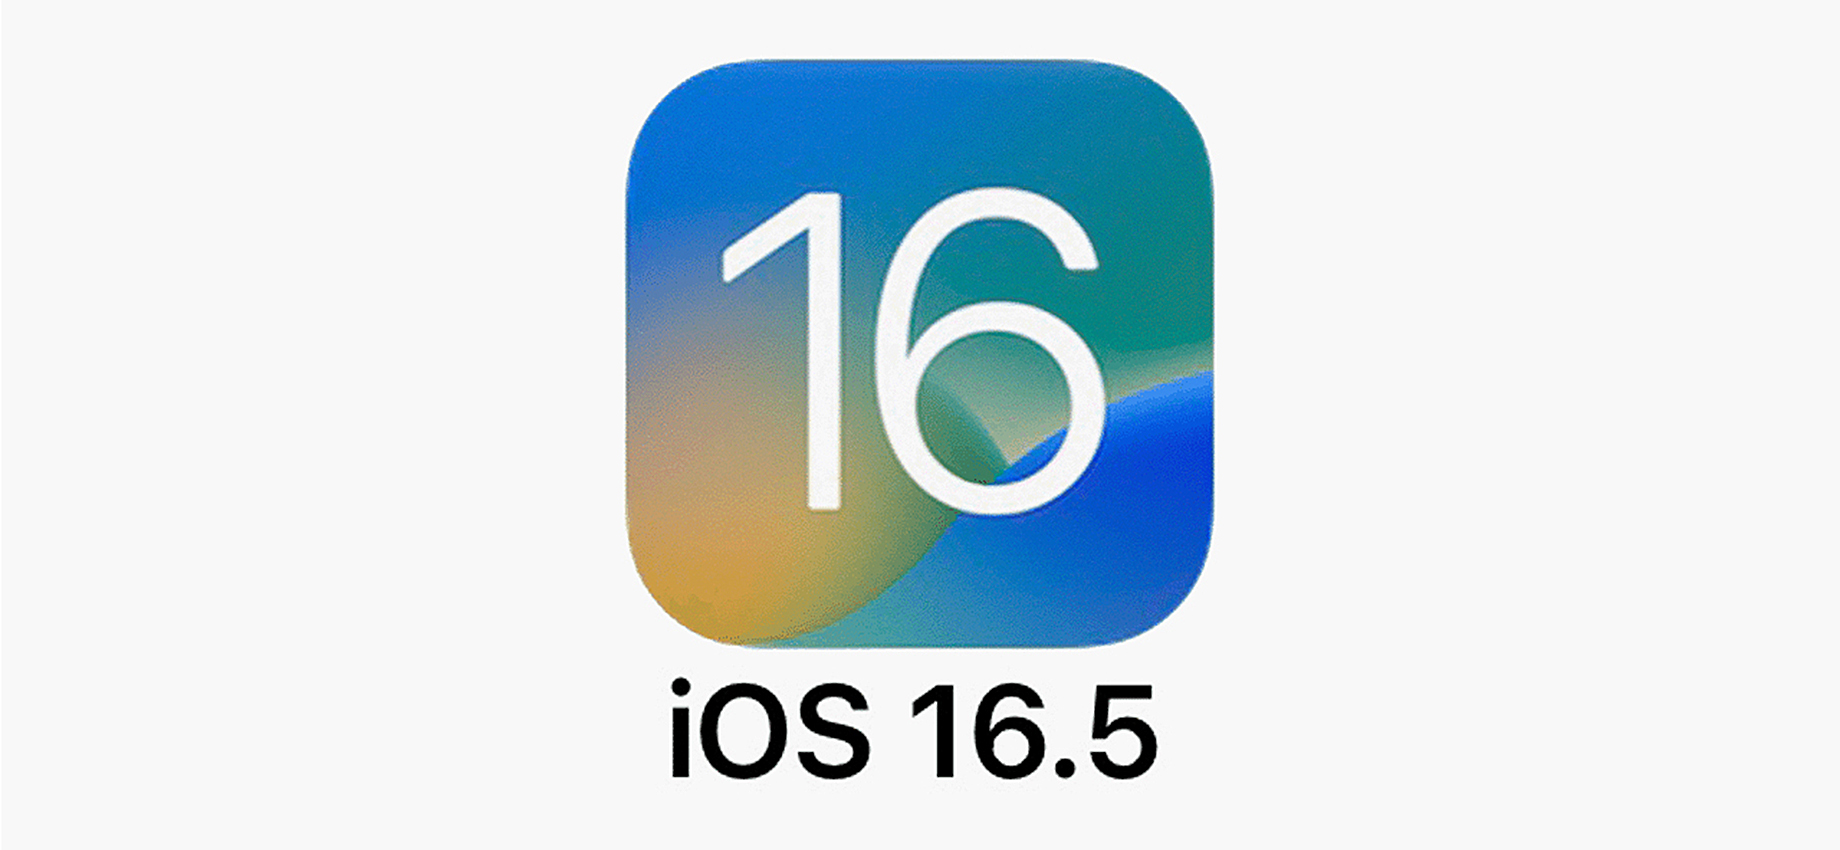 Вышла iOS 16.5: новые обои, исправление ошибок и спортивный раздел в Apple News